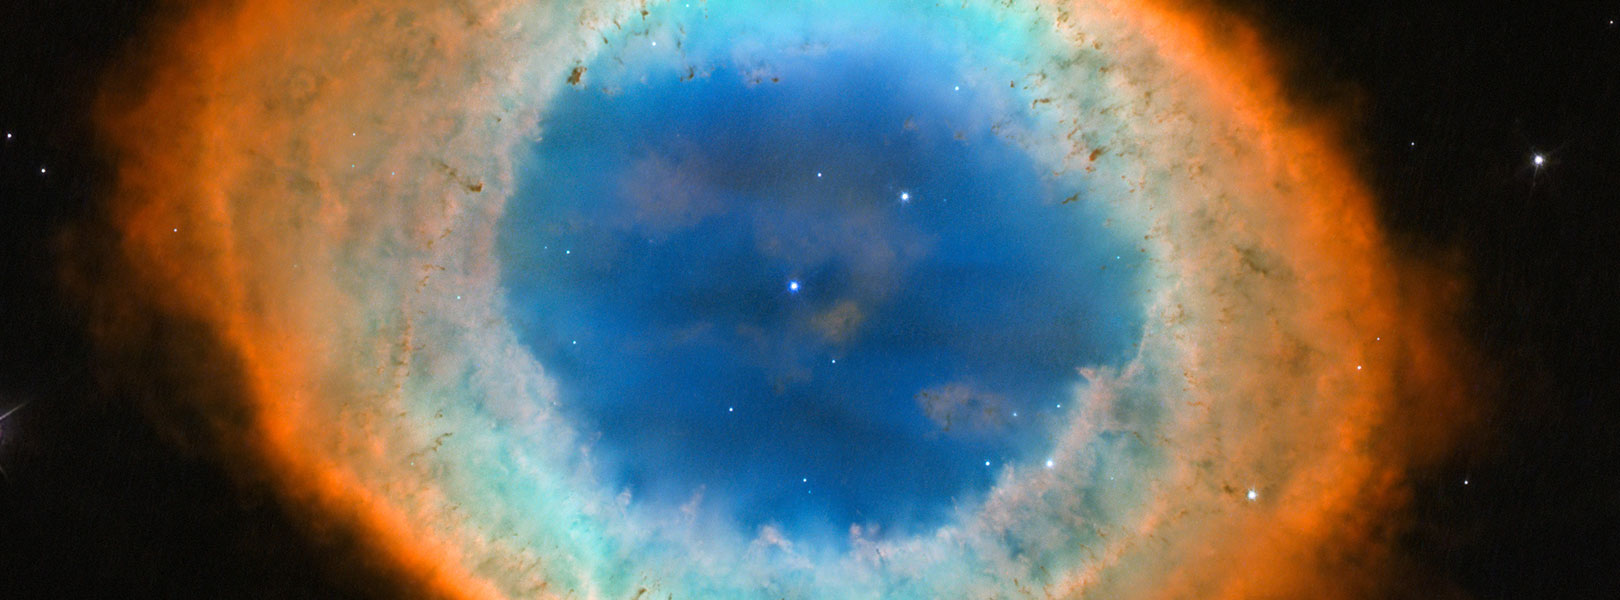 Nebulosa del Anillo (Messier 57), imagen tomada por el Hubble en 2013.